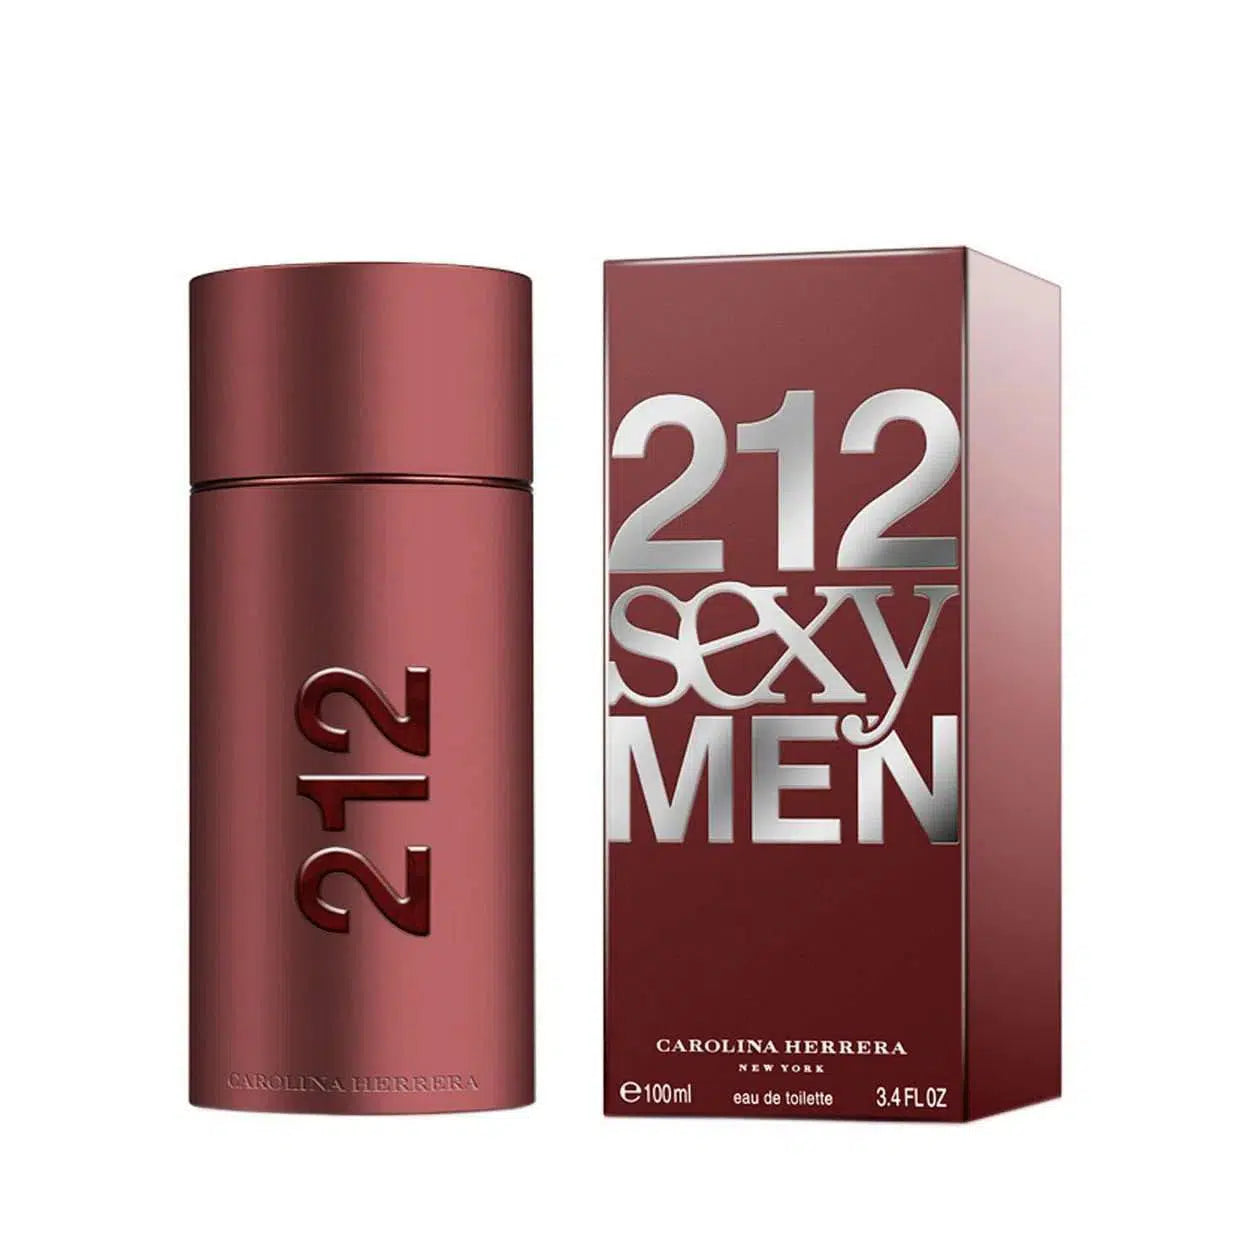 Carolina Herrera 212 Sexy Men 100ml - Perfume Philippines